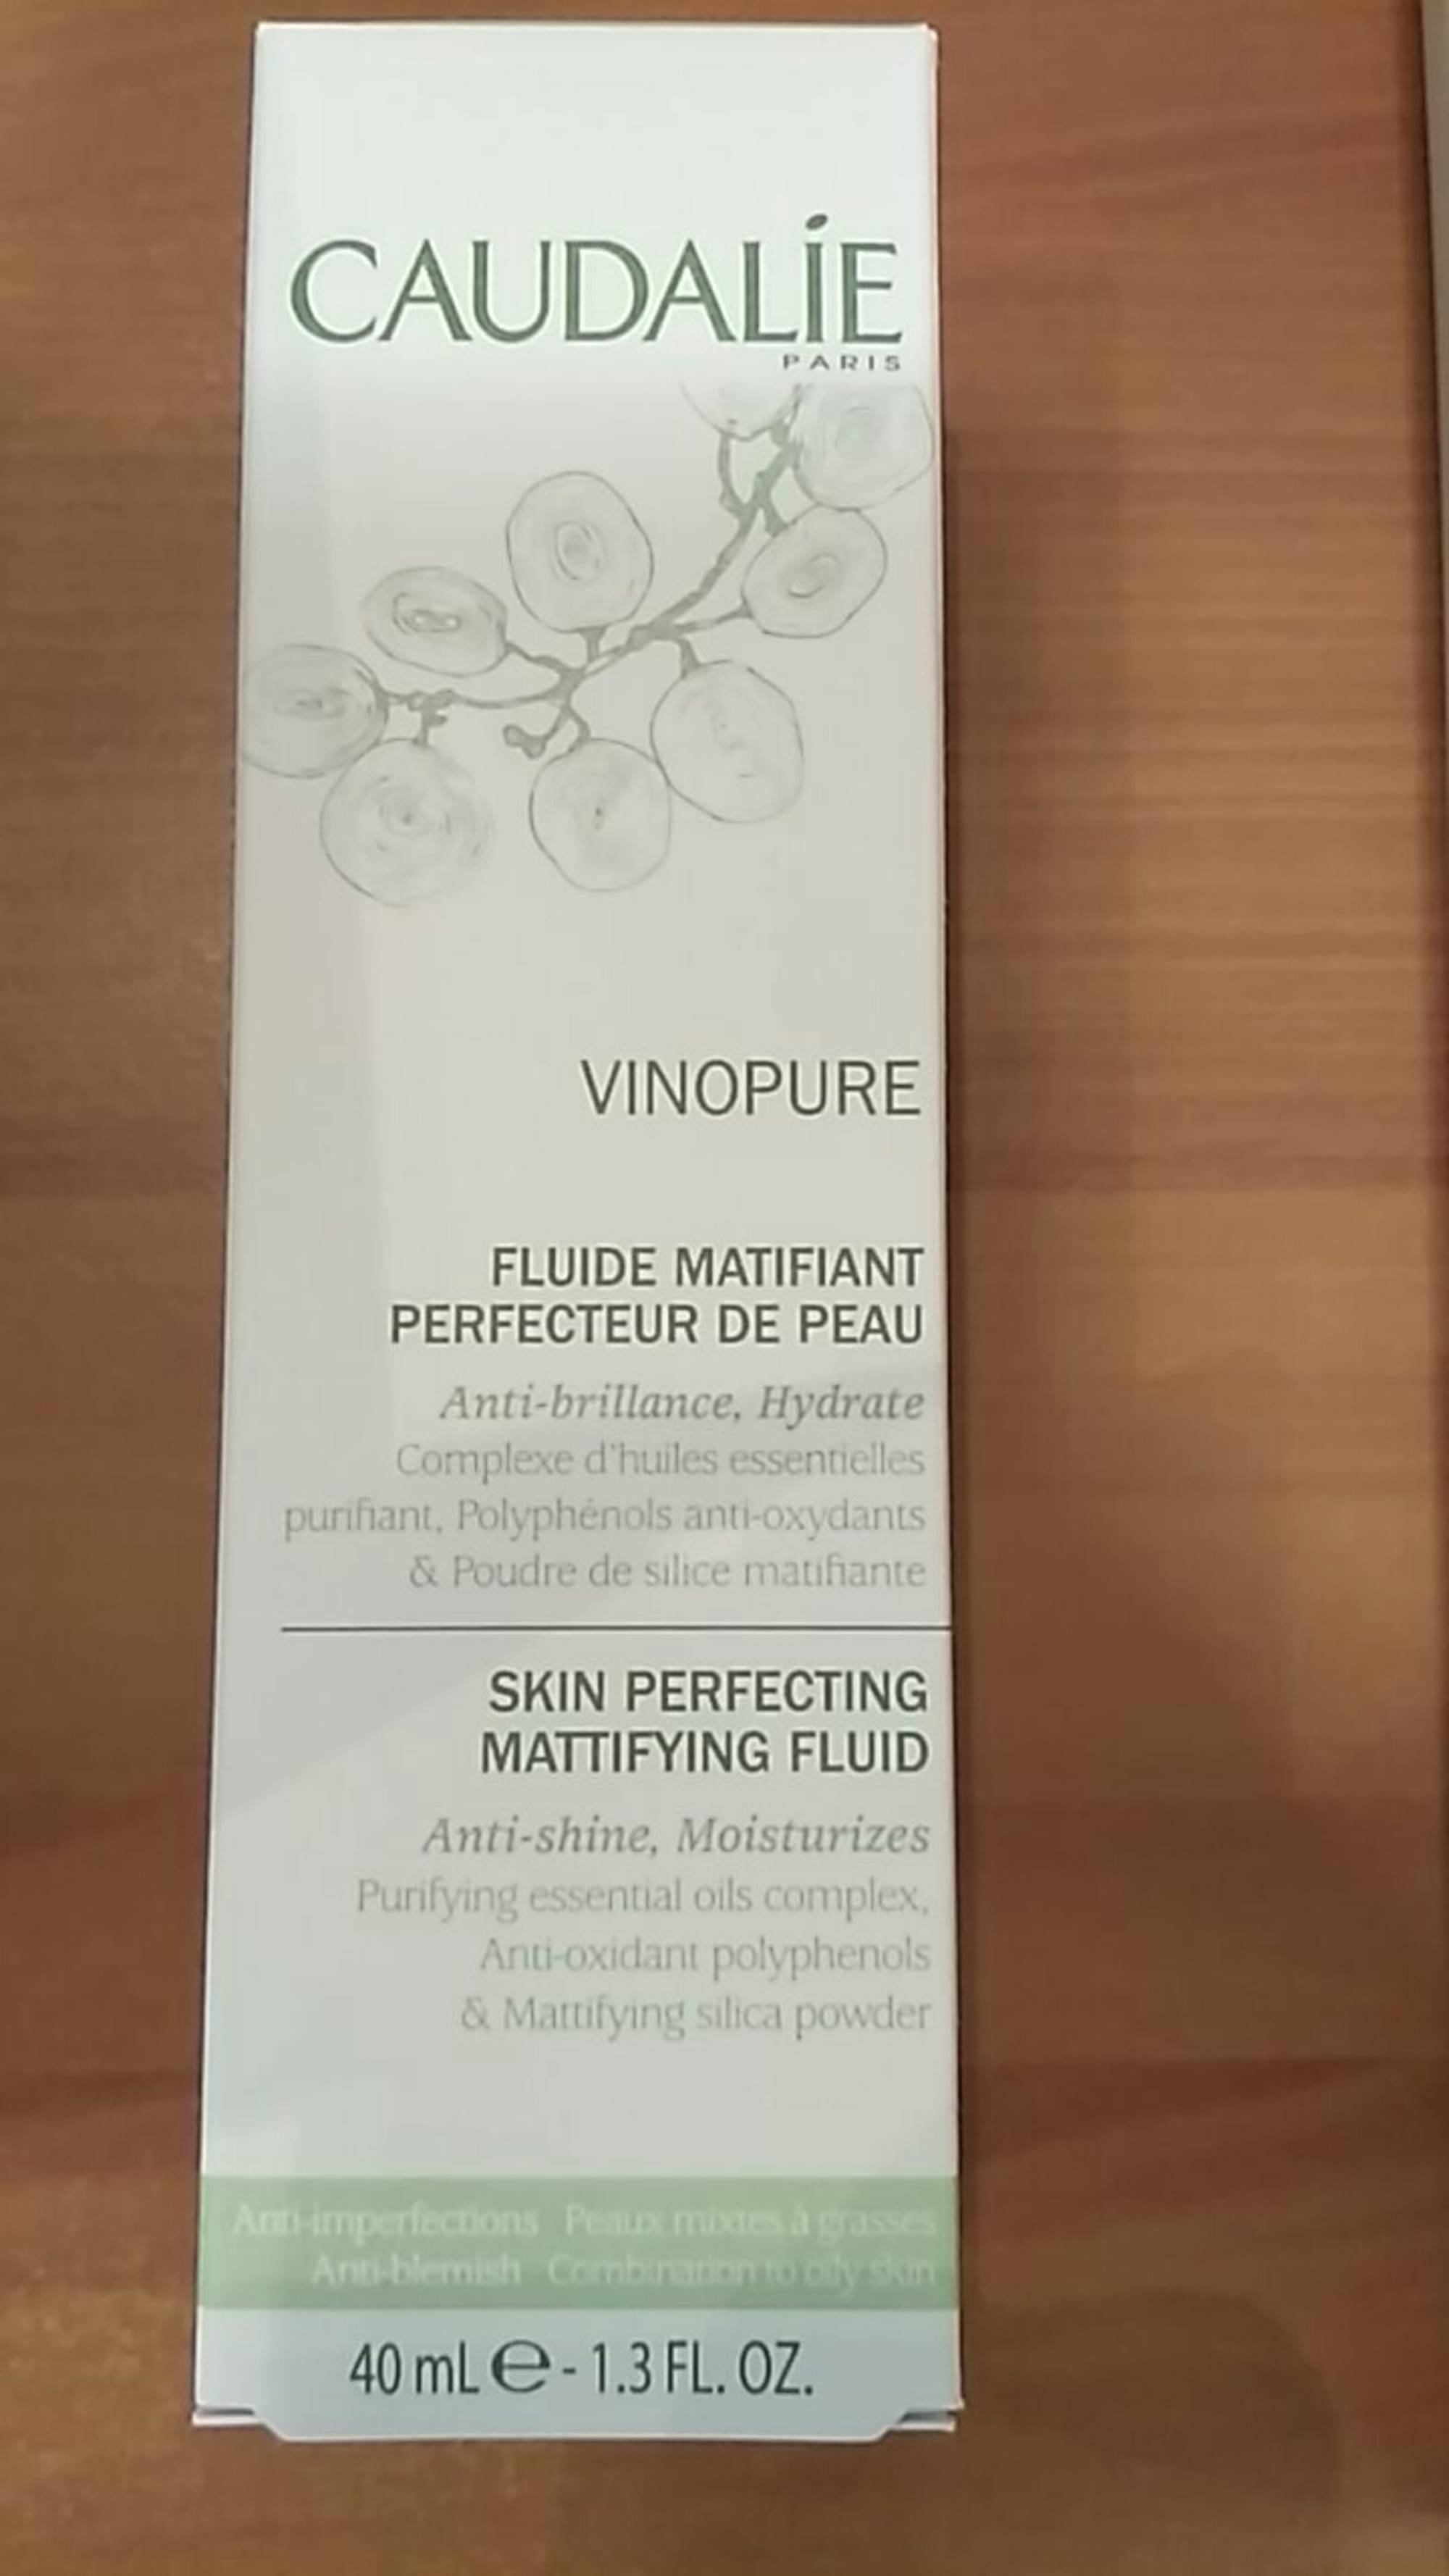 CAUDALIE PARIS - Vinopure - Fluide matifiant perfecteur de peau